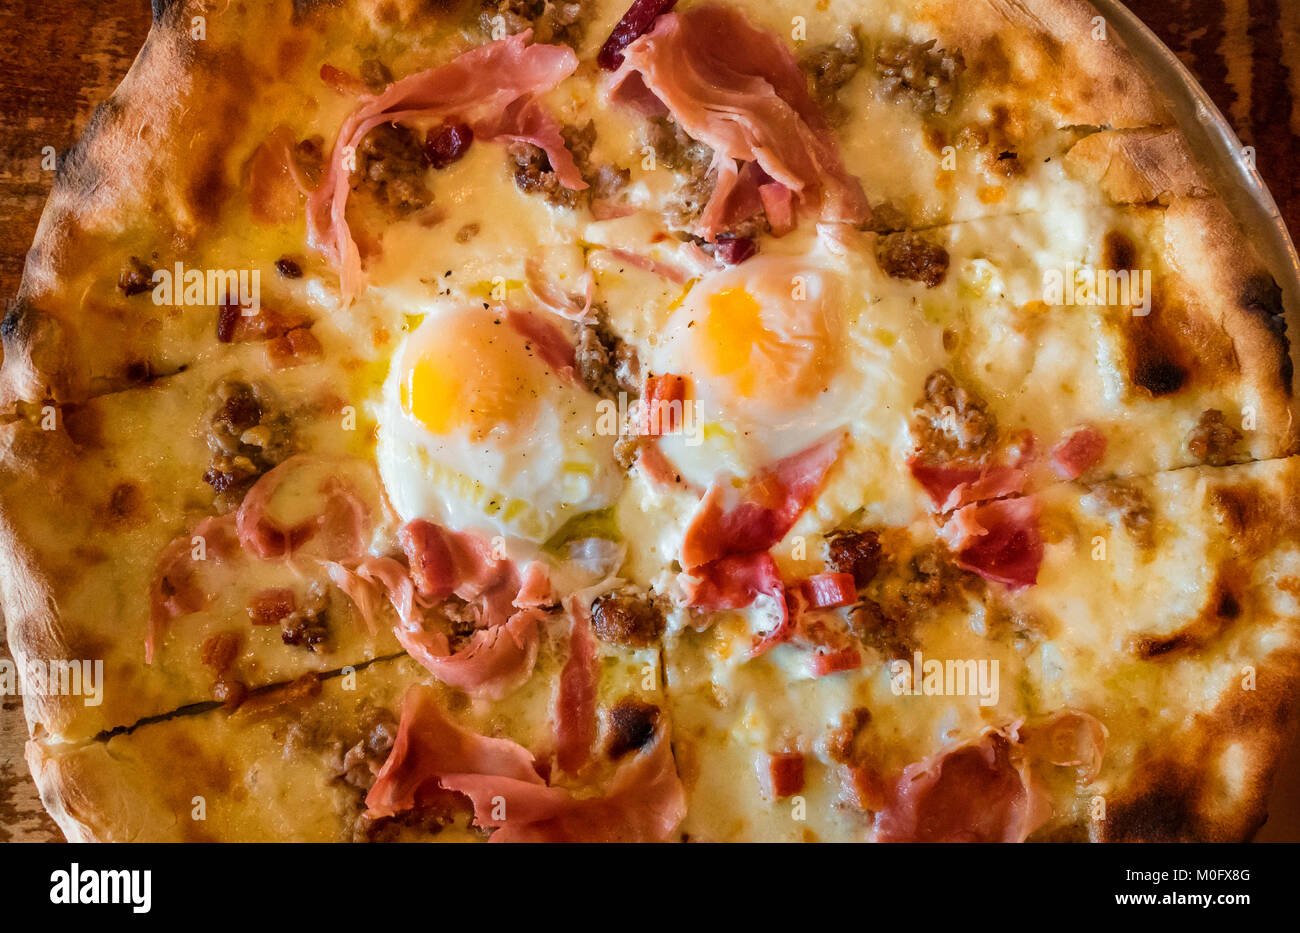 Une pizza pour le petit-déjeuner, avec du fromage mozzarella, du jambon cuit, des saucisses et deux œufs frits, sunnyside UP Banque D'Images